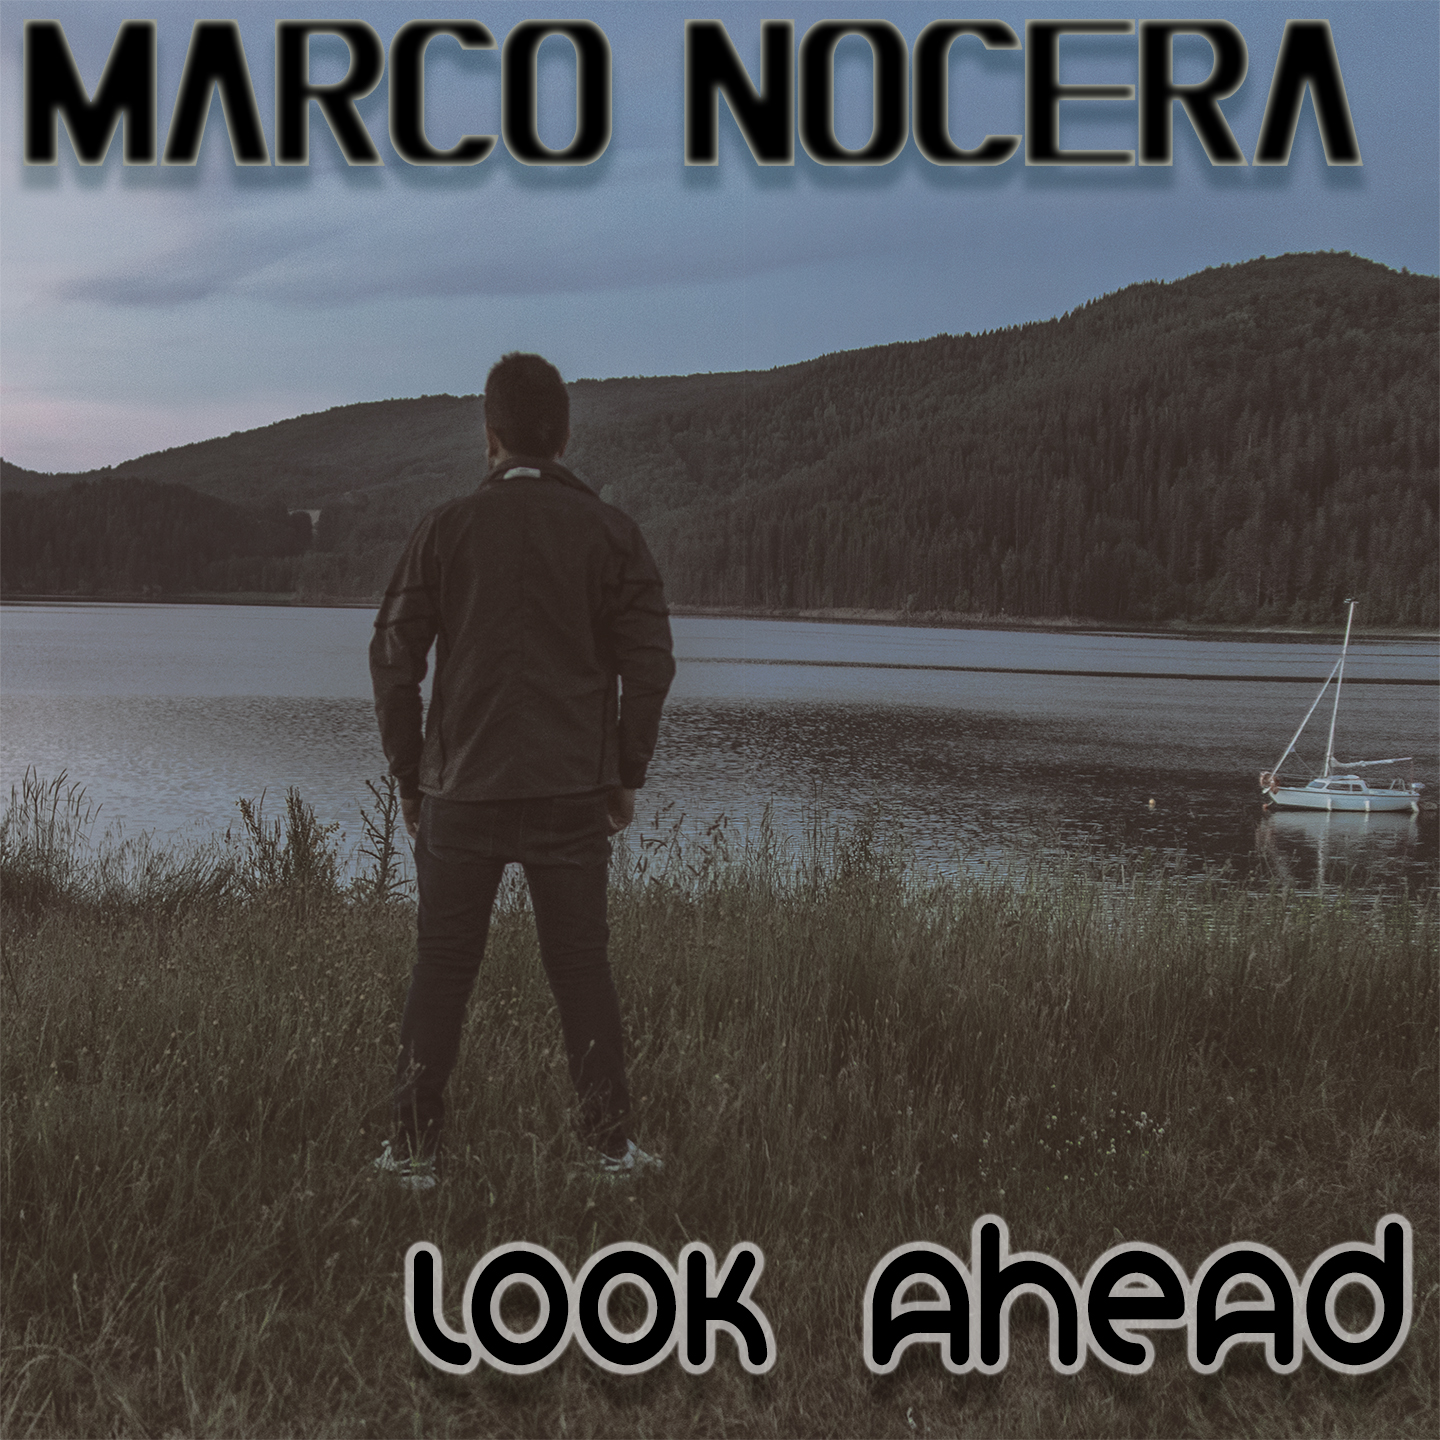 Esce oggi, 24 settembre, “LOOK AHEAD” l’album dell’artista brindisino Marco Nocera su etichetta Music Force